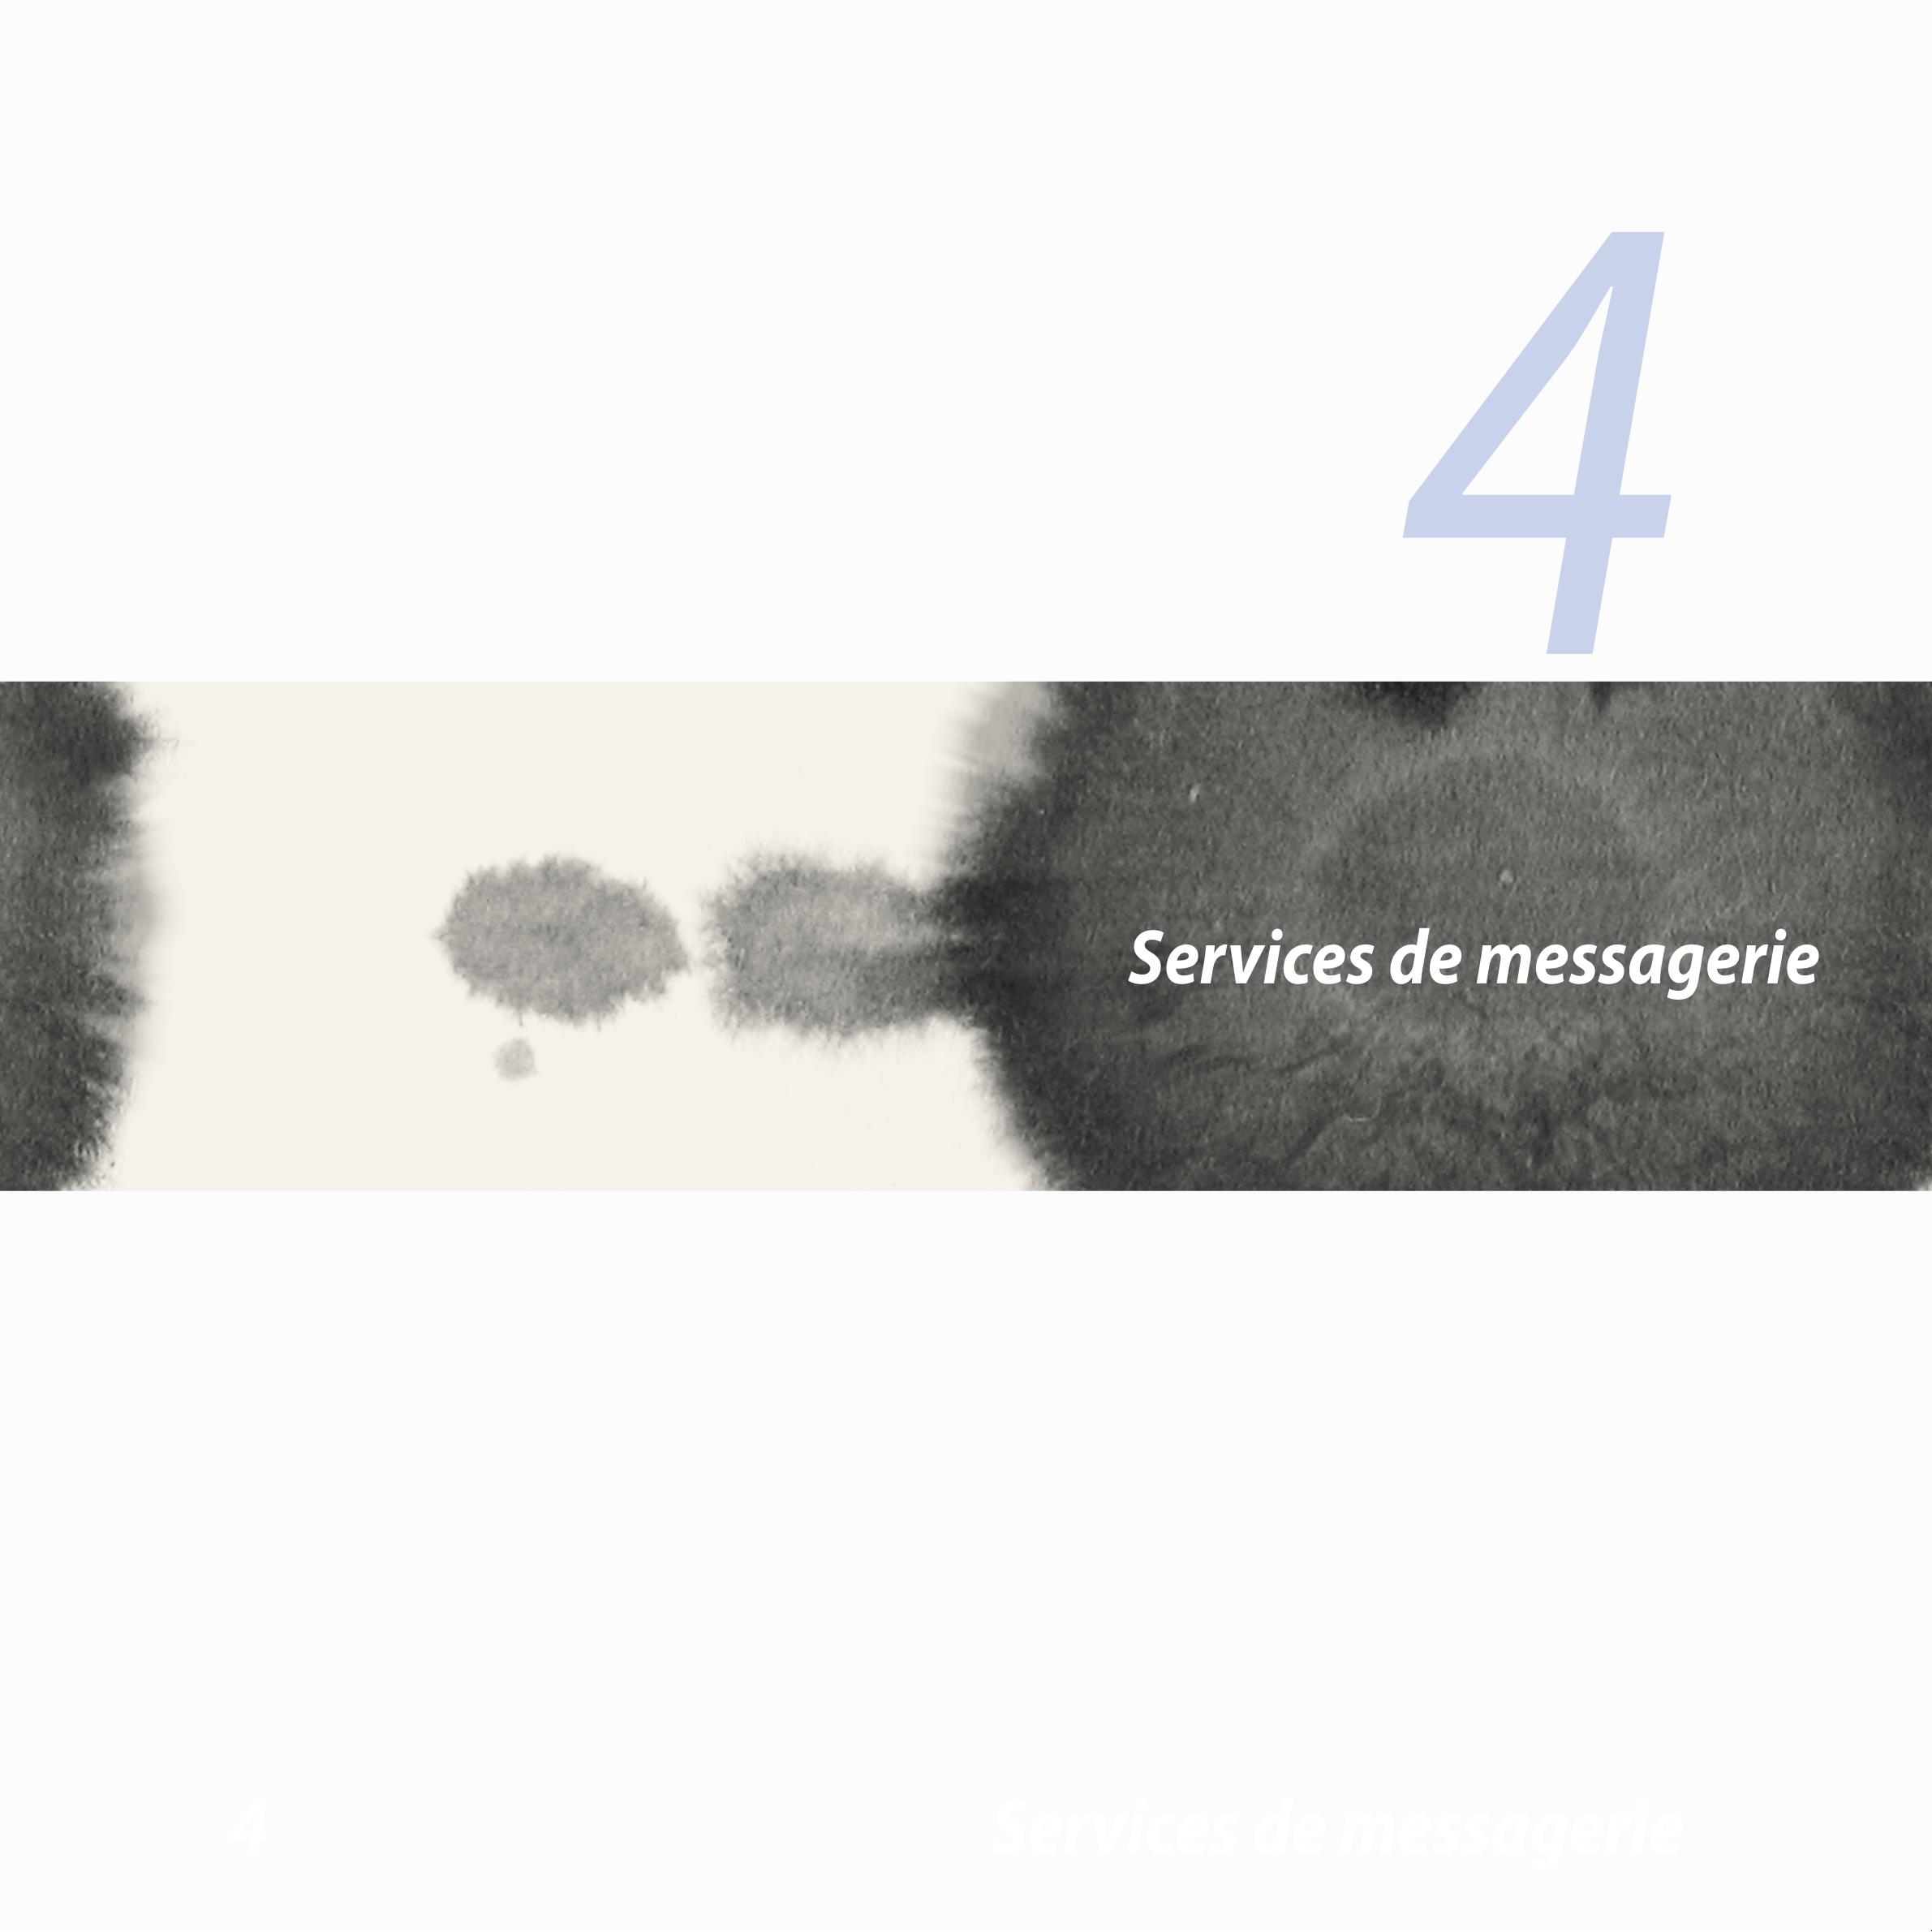 4
Services de messagerie
4  Services de messagerie